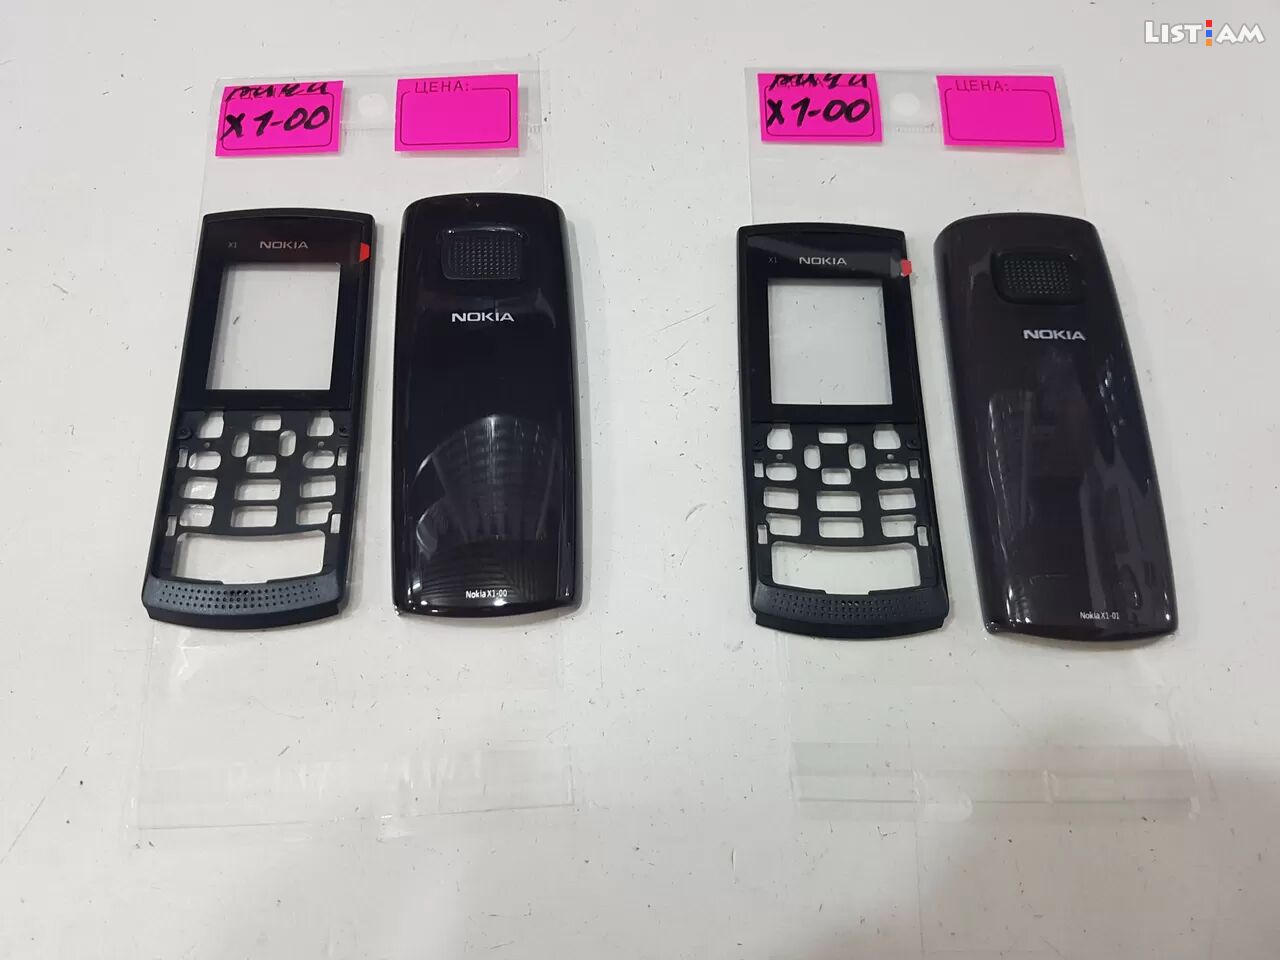 Nokia x1-00